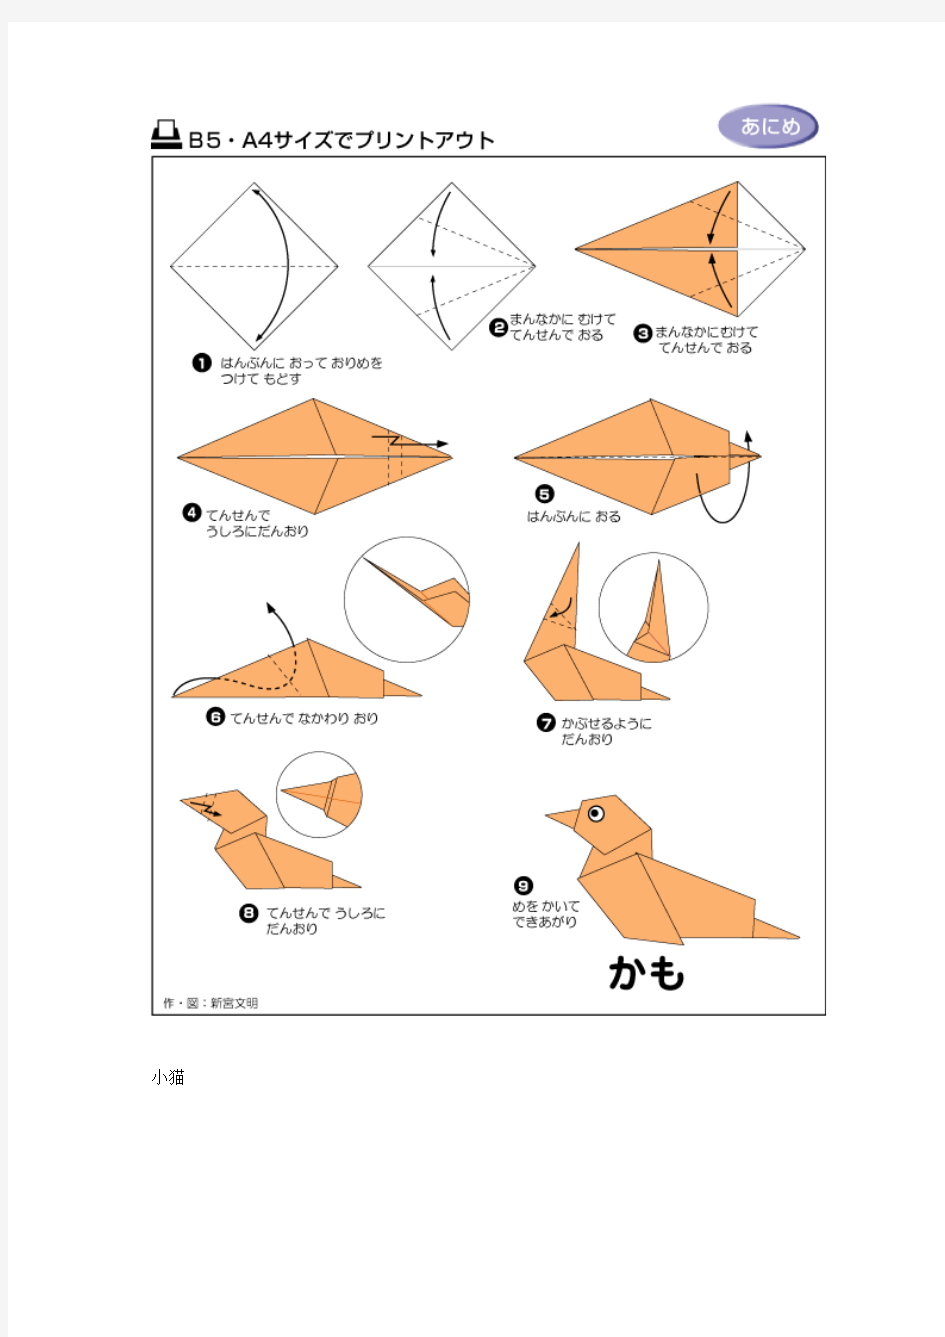 各种折纸图例